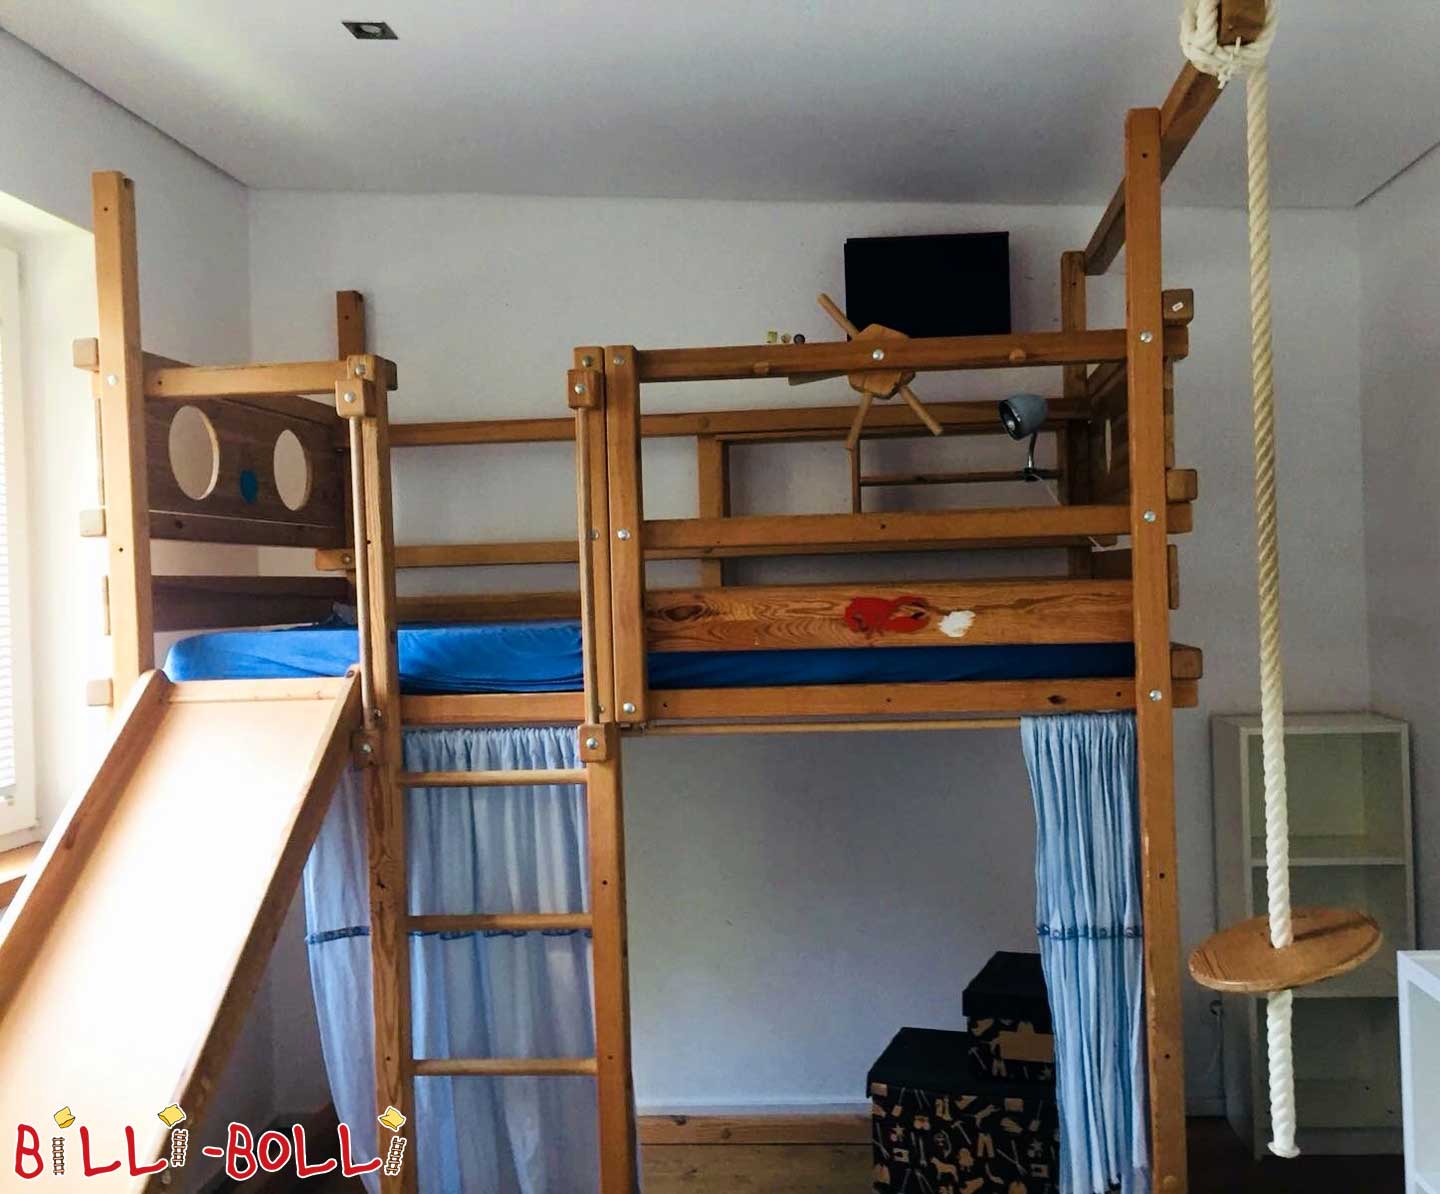 स्लाइड के साथ मचान बिस्तर जो बच्चे के साथ बढ़ता है (कोटि: मचान बिस्तर का इस्तेमाल किया)